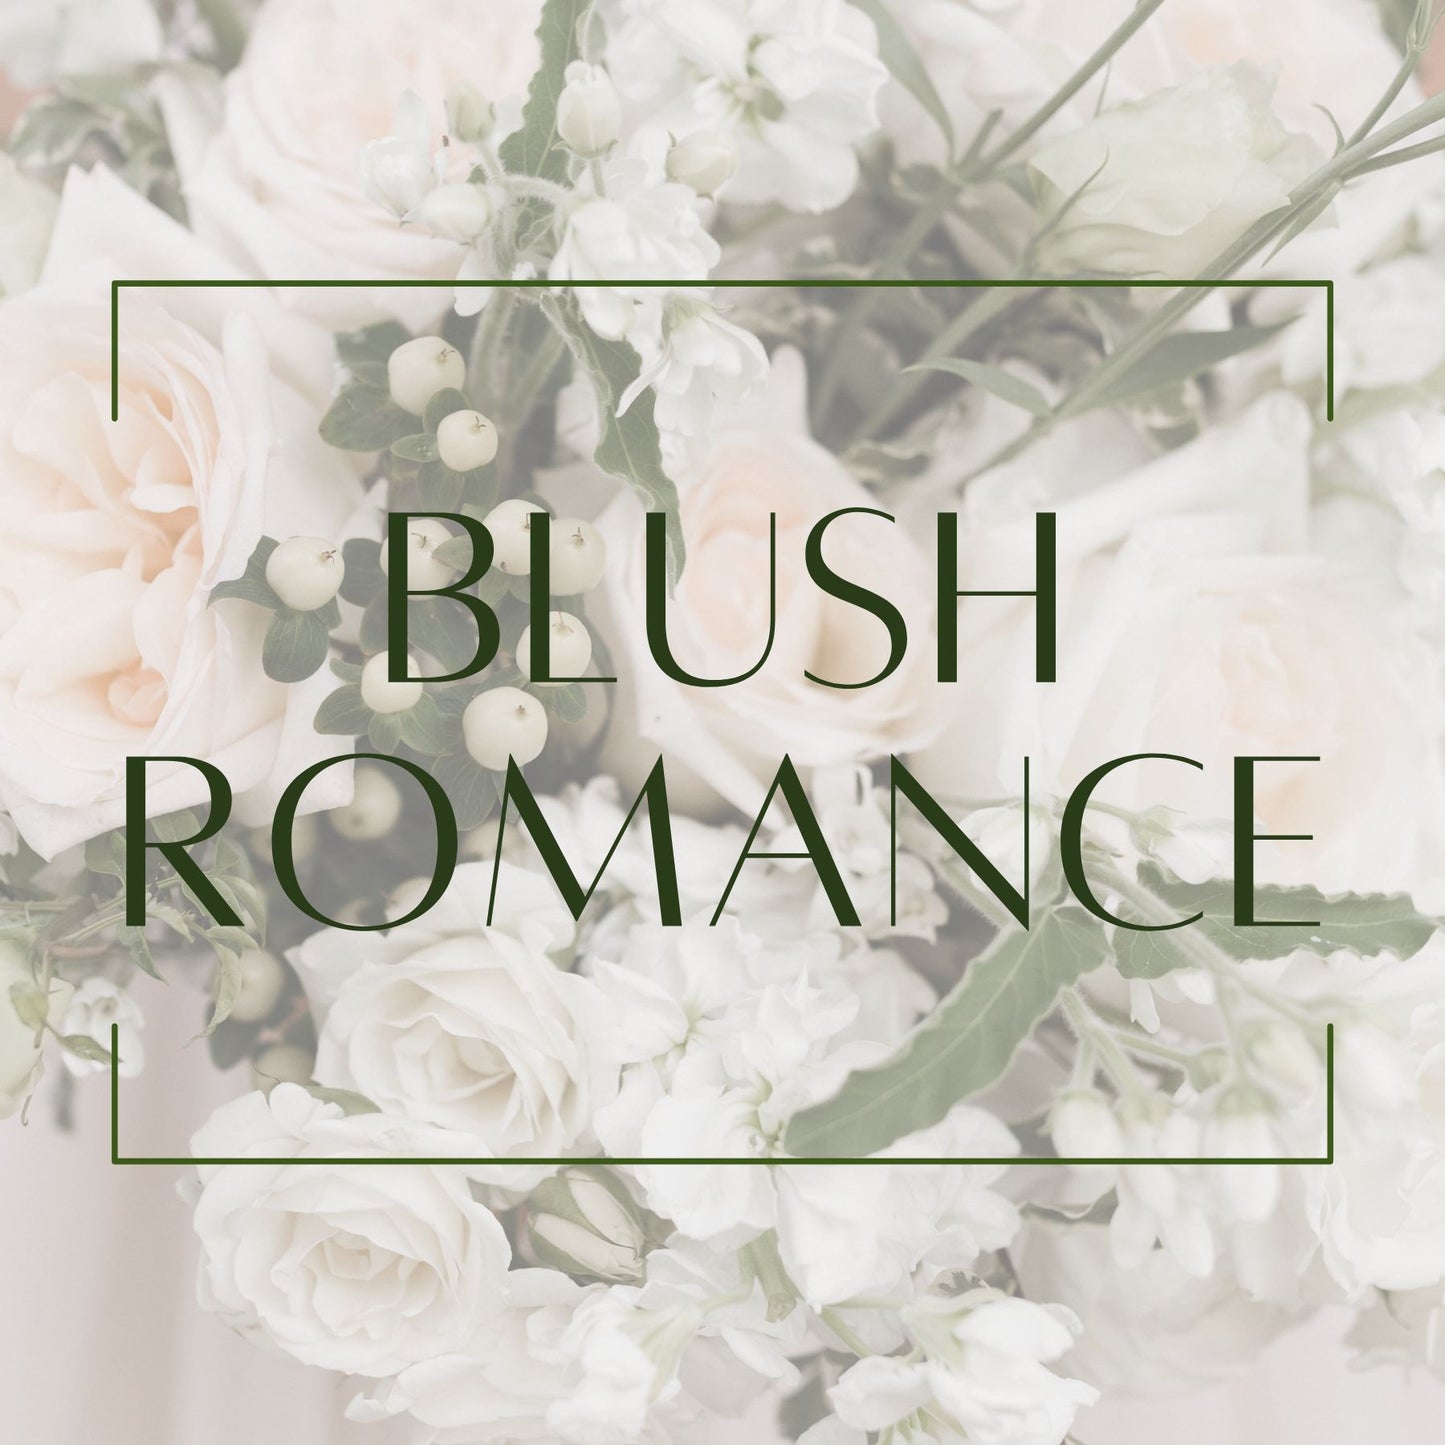 Blush Romance - Boutonniere